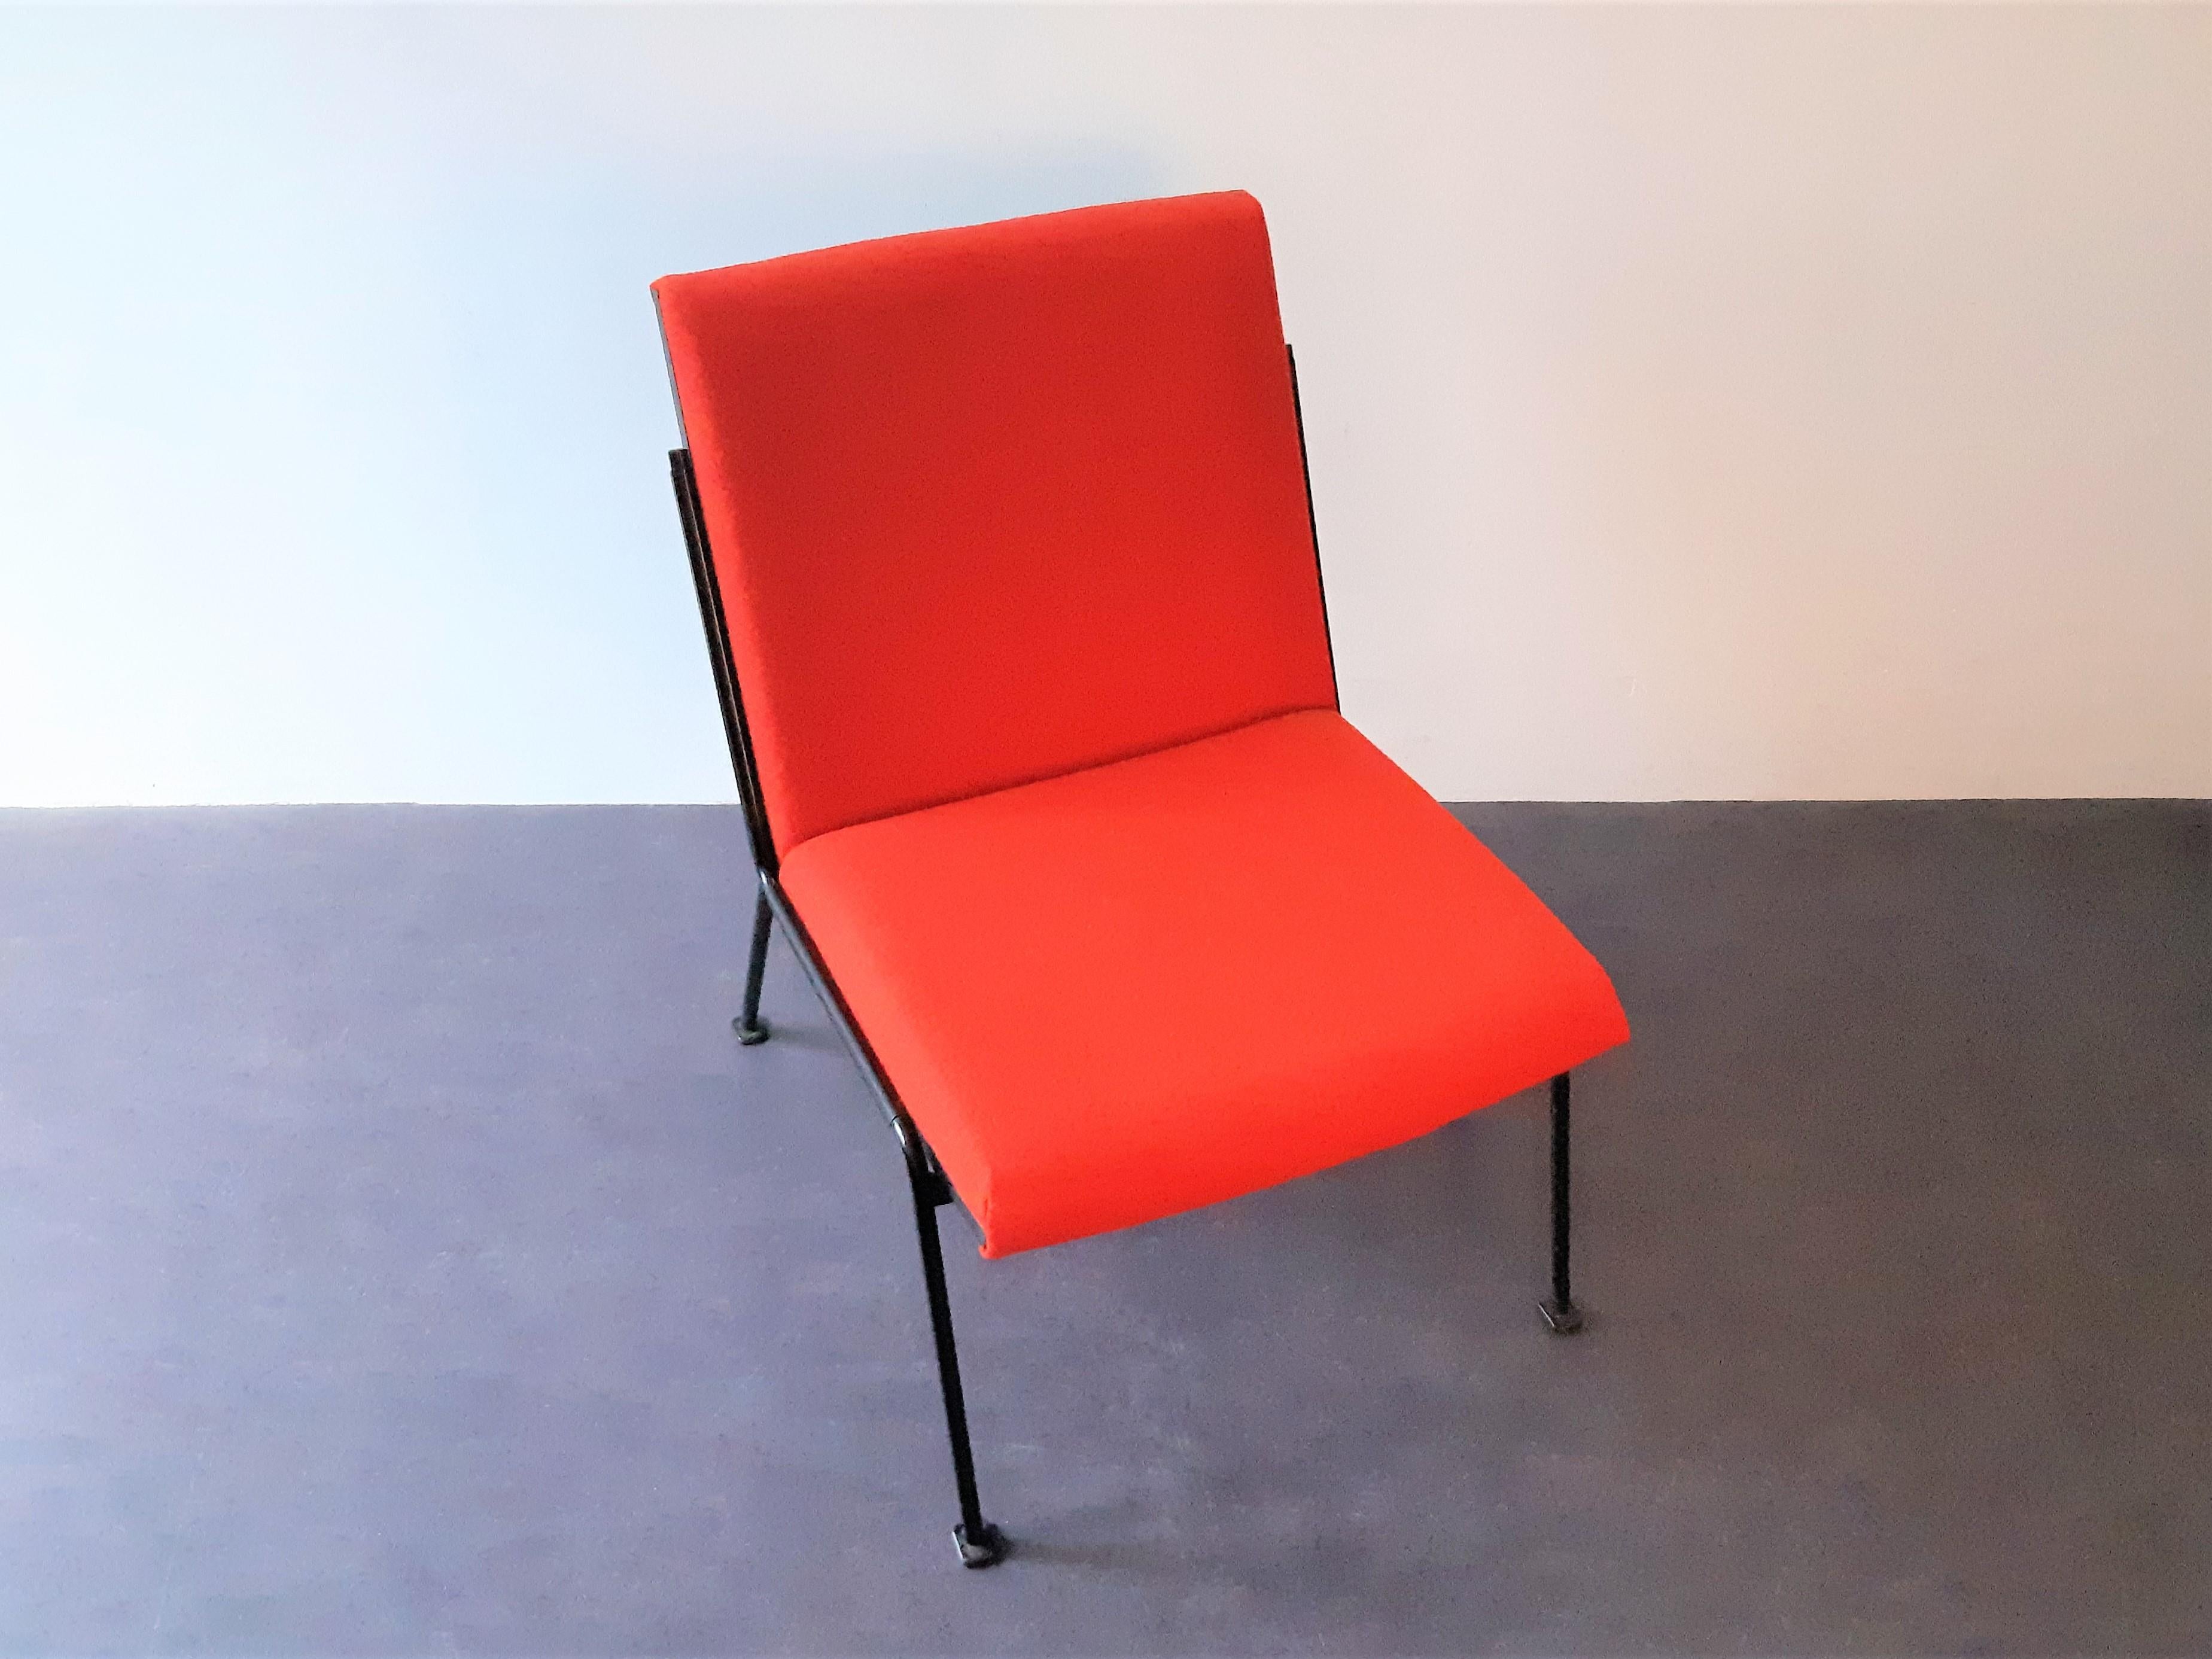 La chaise longue Oase a été conçue par Wim Rietveld pour Ahrend de Cirkel en 1958, et a reçu le prix Signe d'Or en 1959. Une belle pièce de design hollandais ! Cette chaise est nouvellement tapissée d'un magnifique tissu Kvadrat rouge (Tonus 4,